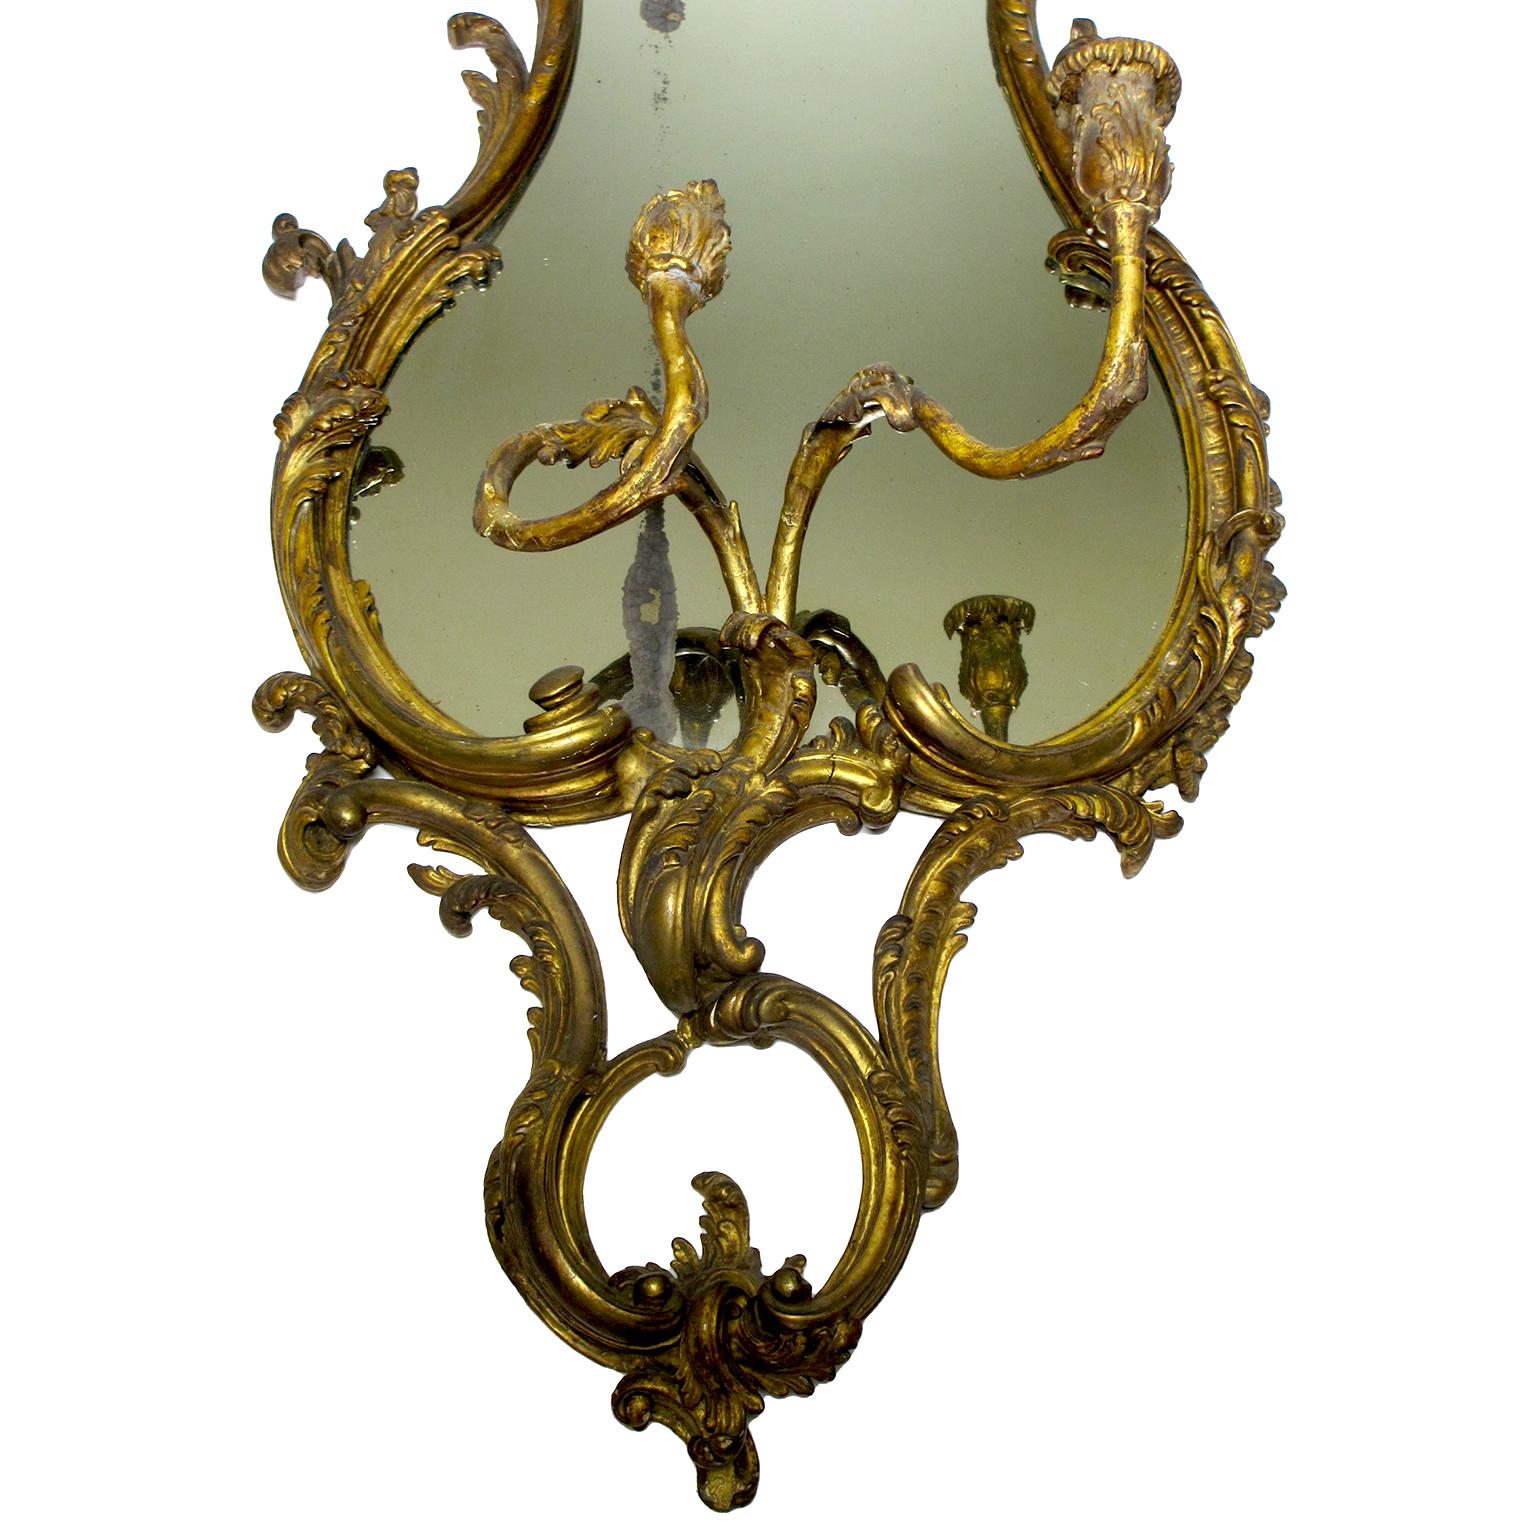 Un beau miroir girandole (lumière murale) de style Louis XVI du 19ème siècle en bois doré et gesso sculpté avec candélabre. Le cadre du miroir sculpté et à volutes est surmonté d'une paire de candélabres à volutes. Paris, 1880 environ.

Hauteur :